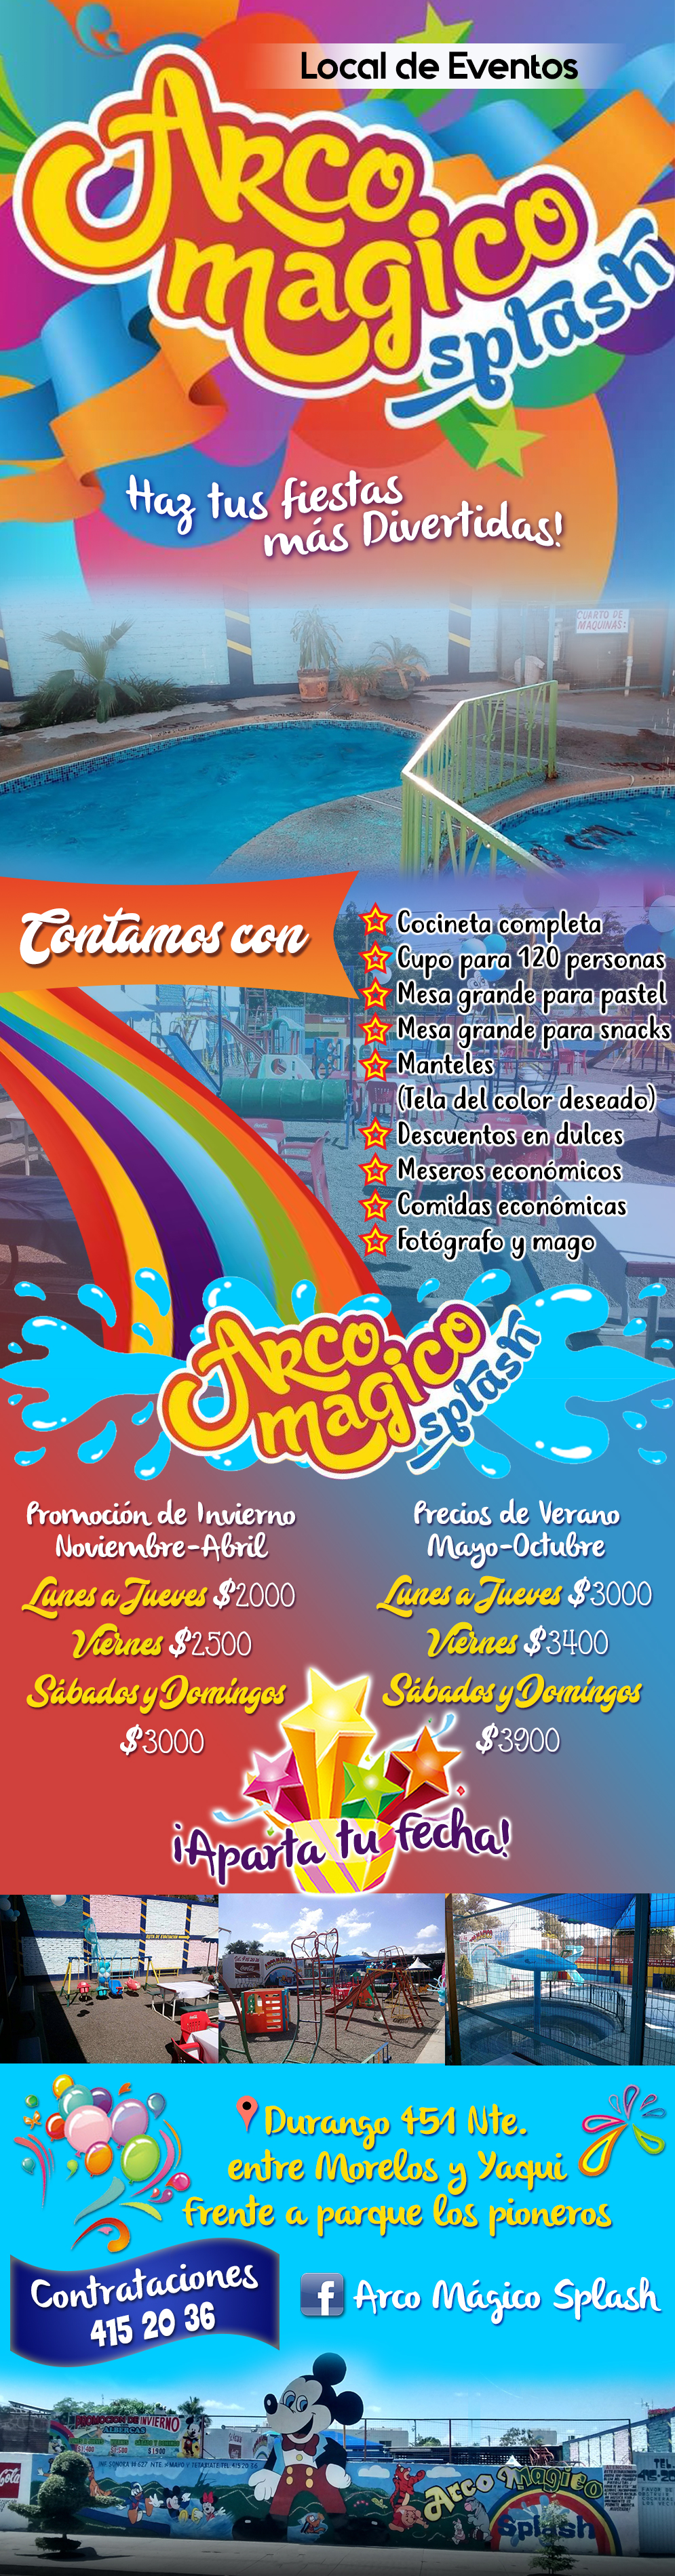 Arco Mágico Splash-Local de eventos, Piñatas, Bautizos, Primera Comunión, Brinca brincas, Variedad de juegos infantiles, Alberca, Diversión.